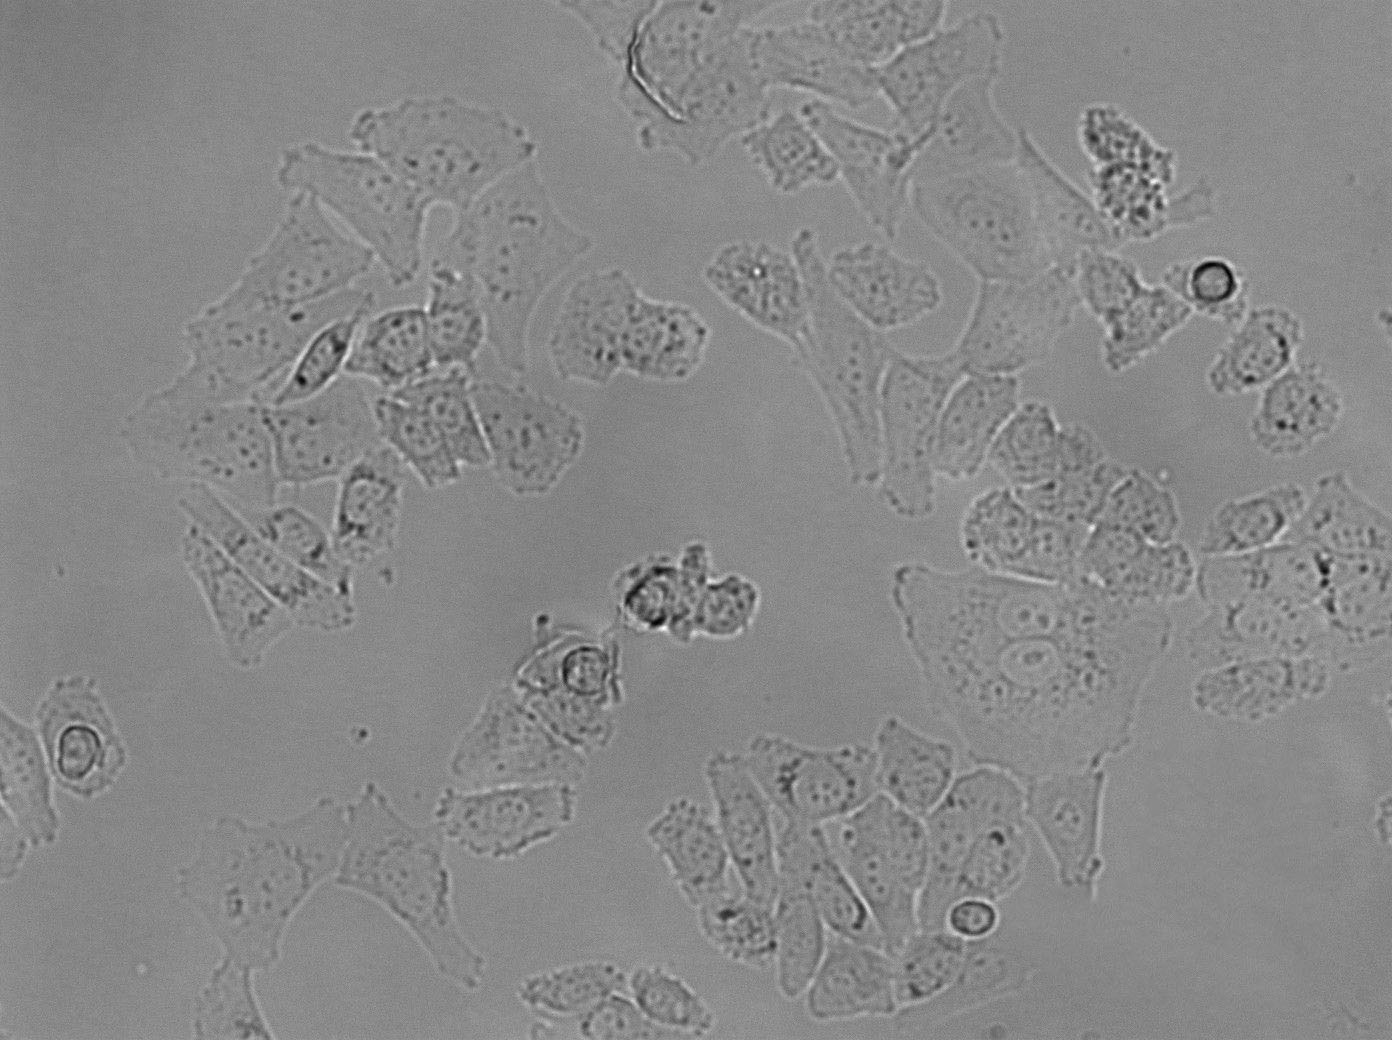 HCC2279 Cell|人肺腺鳞癌细胞